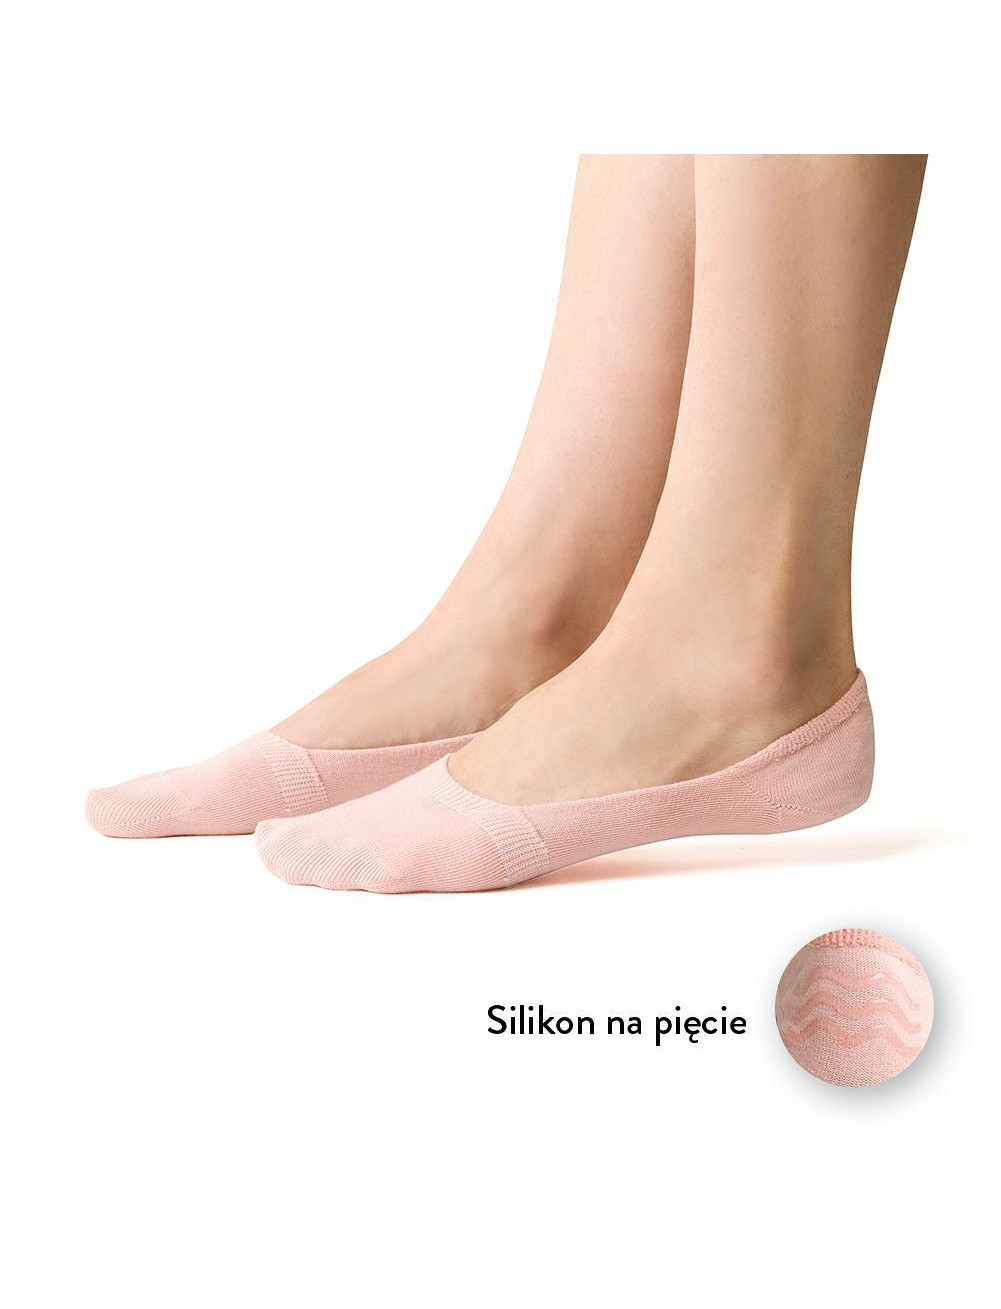 Dámské ponožky baleríny Steven art.058 35-40 ecru 35-37